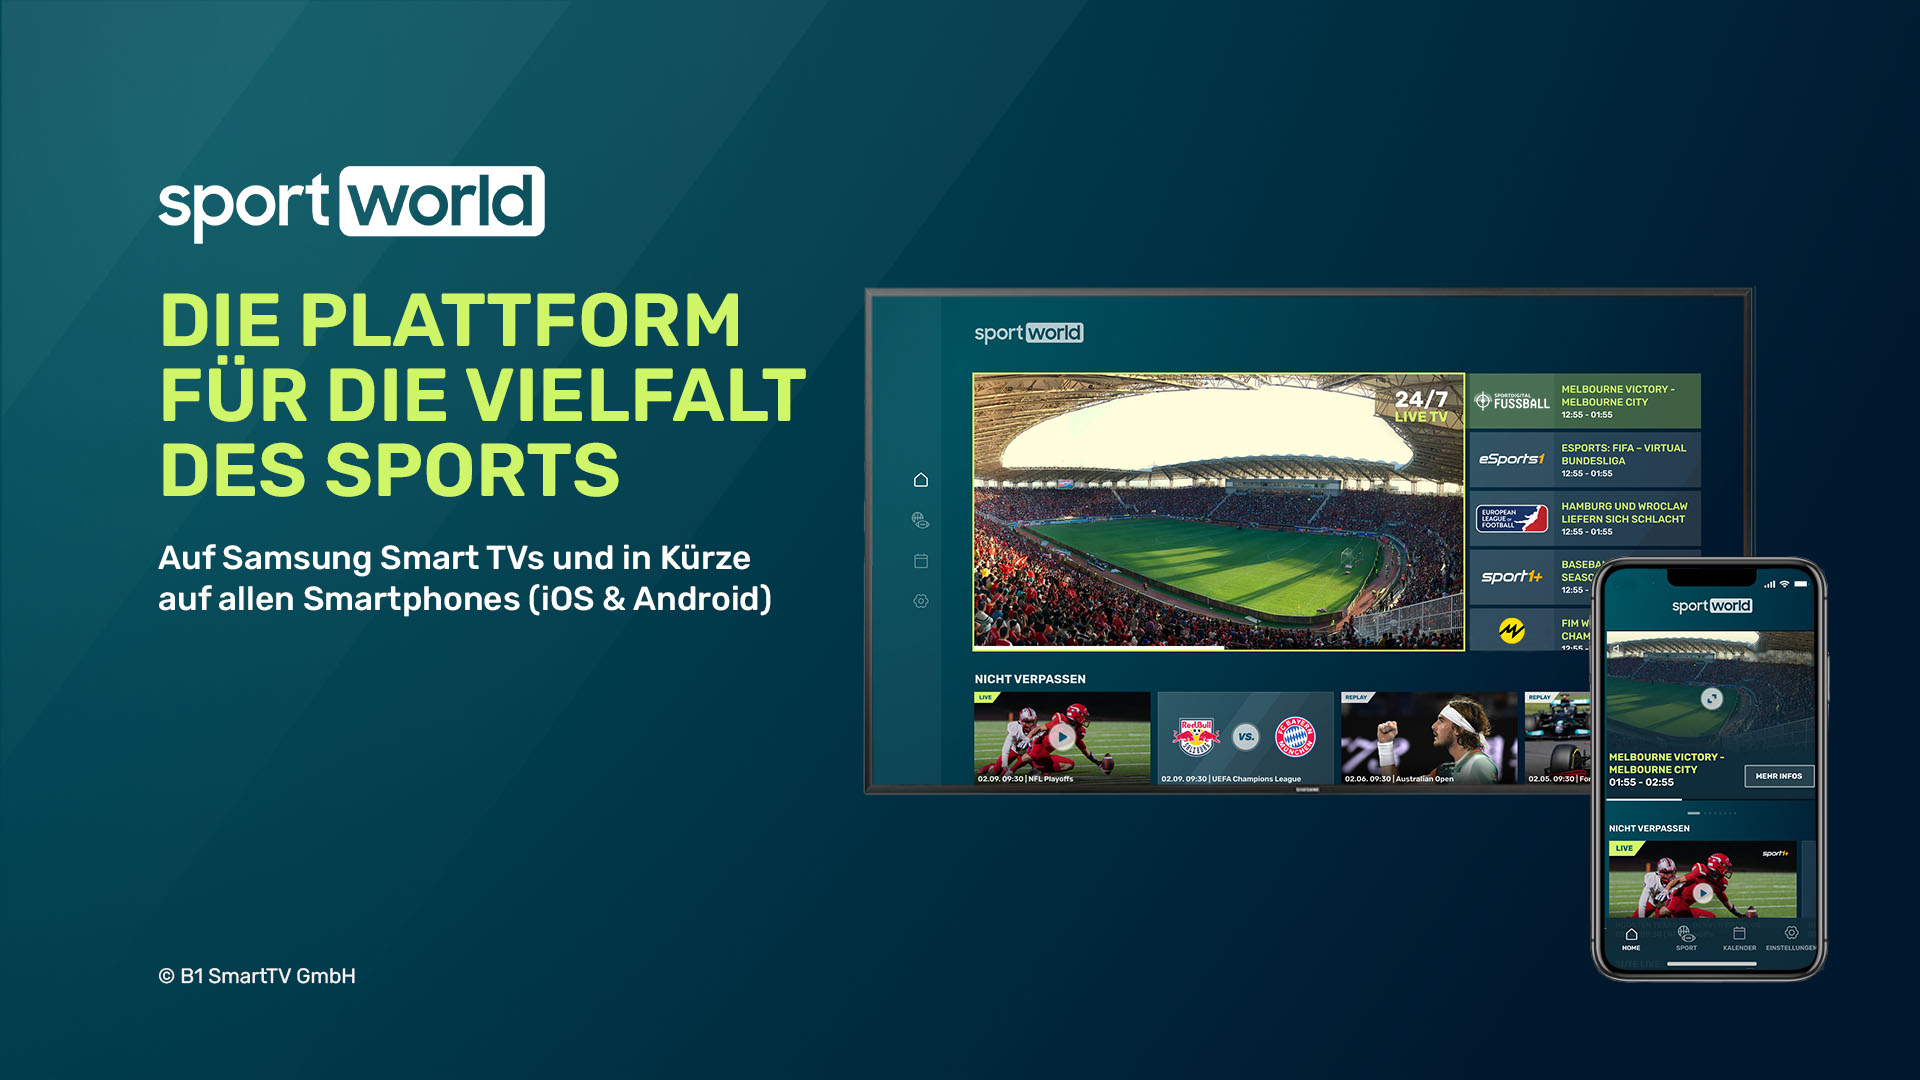 Sportdigital mit allen drei Sport-Sendern vertreten: B1 Smart TV launcht „Sportworld“ bei Samsung